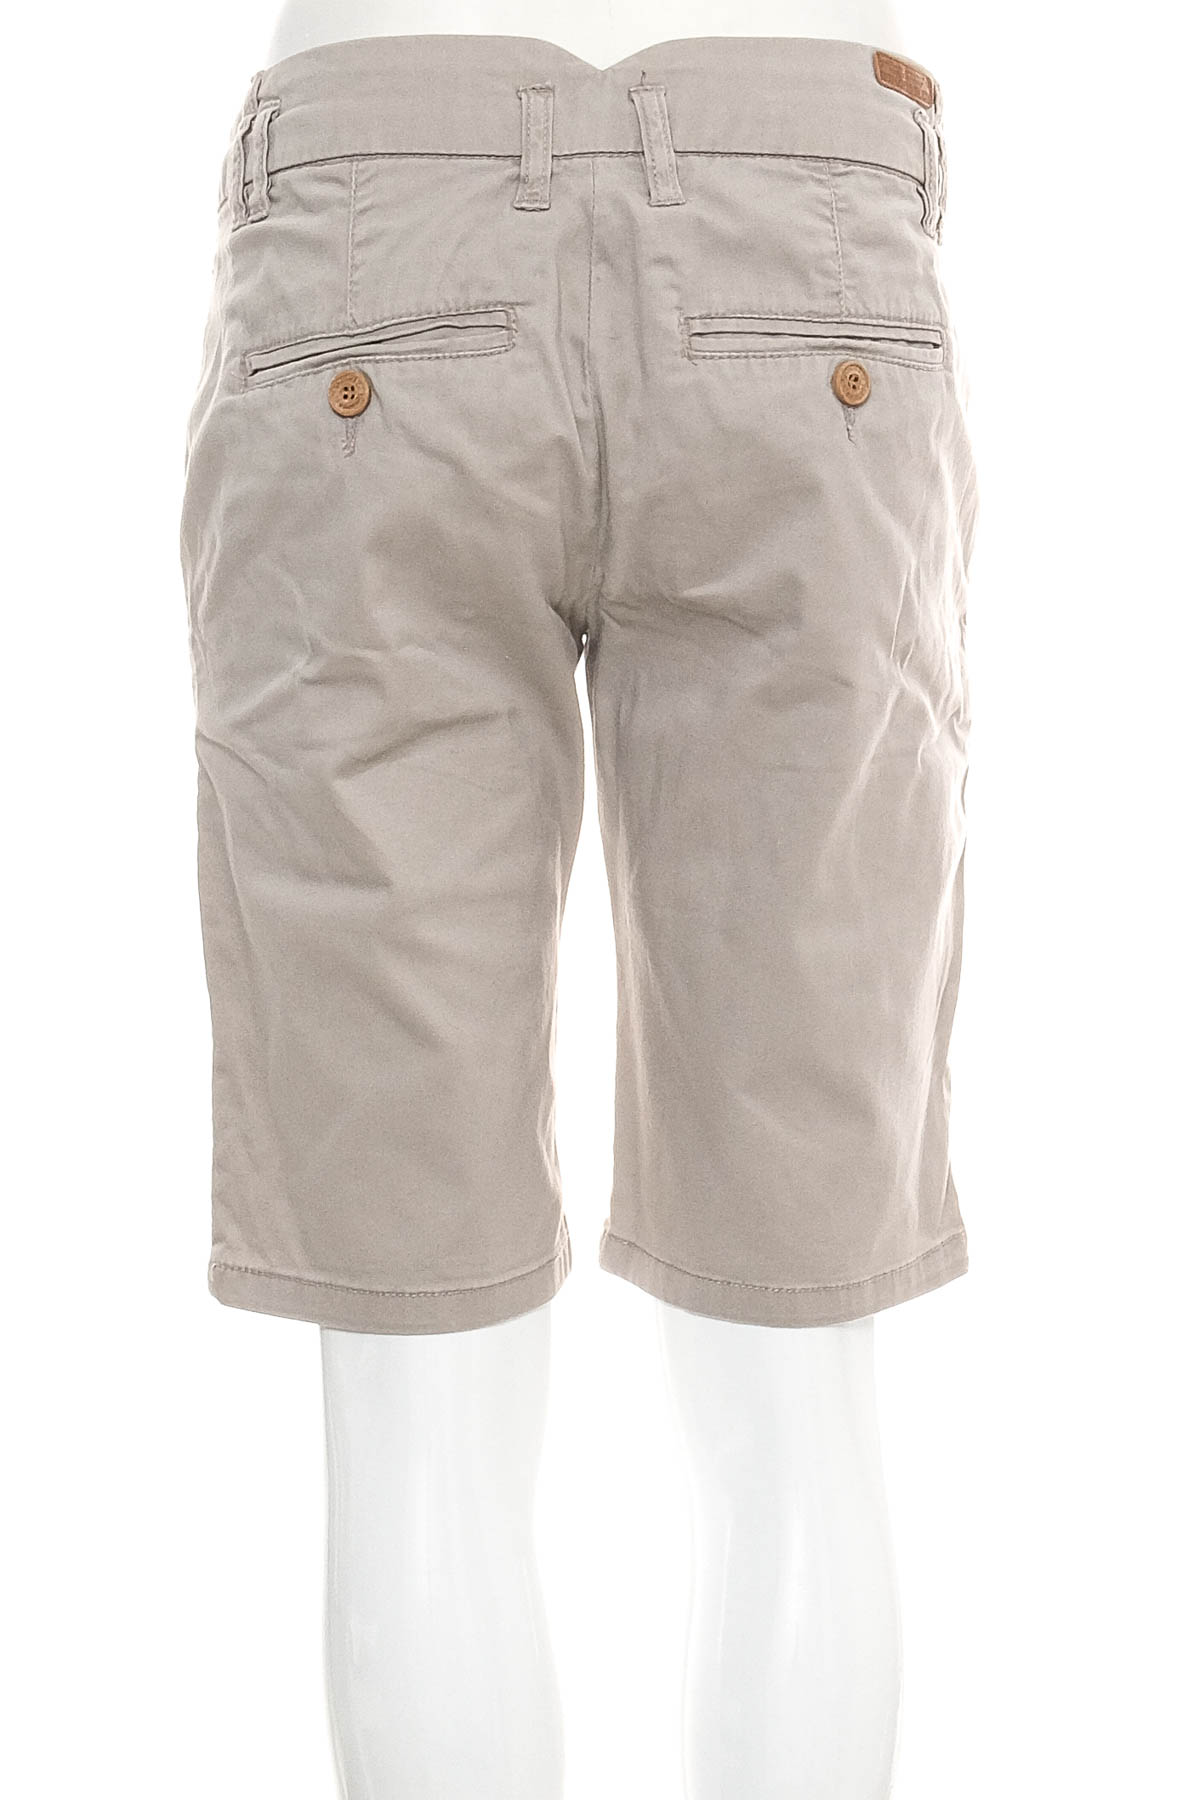 Krótkie spodnie damskie - E2N - 1